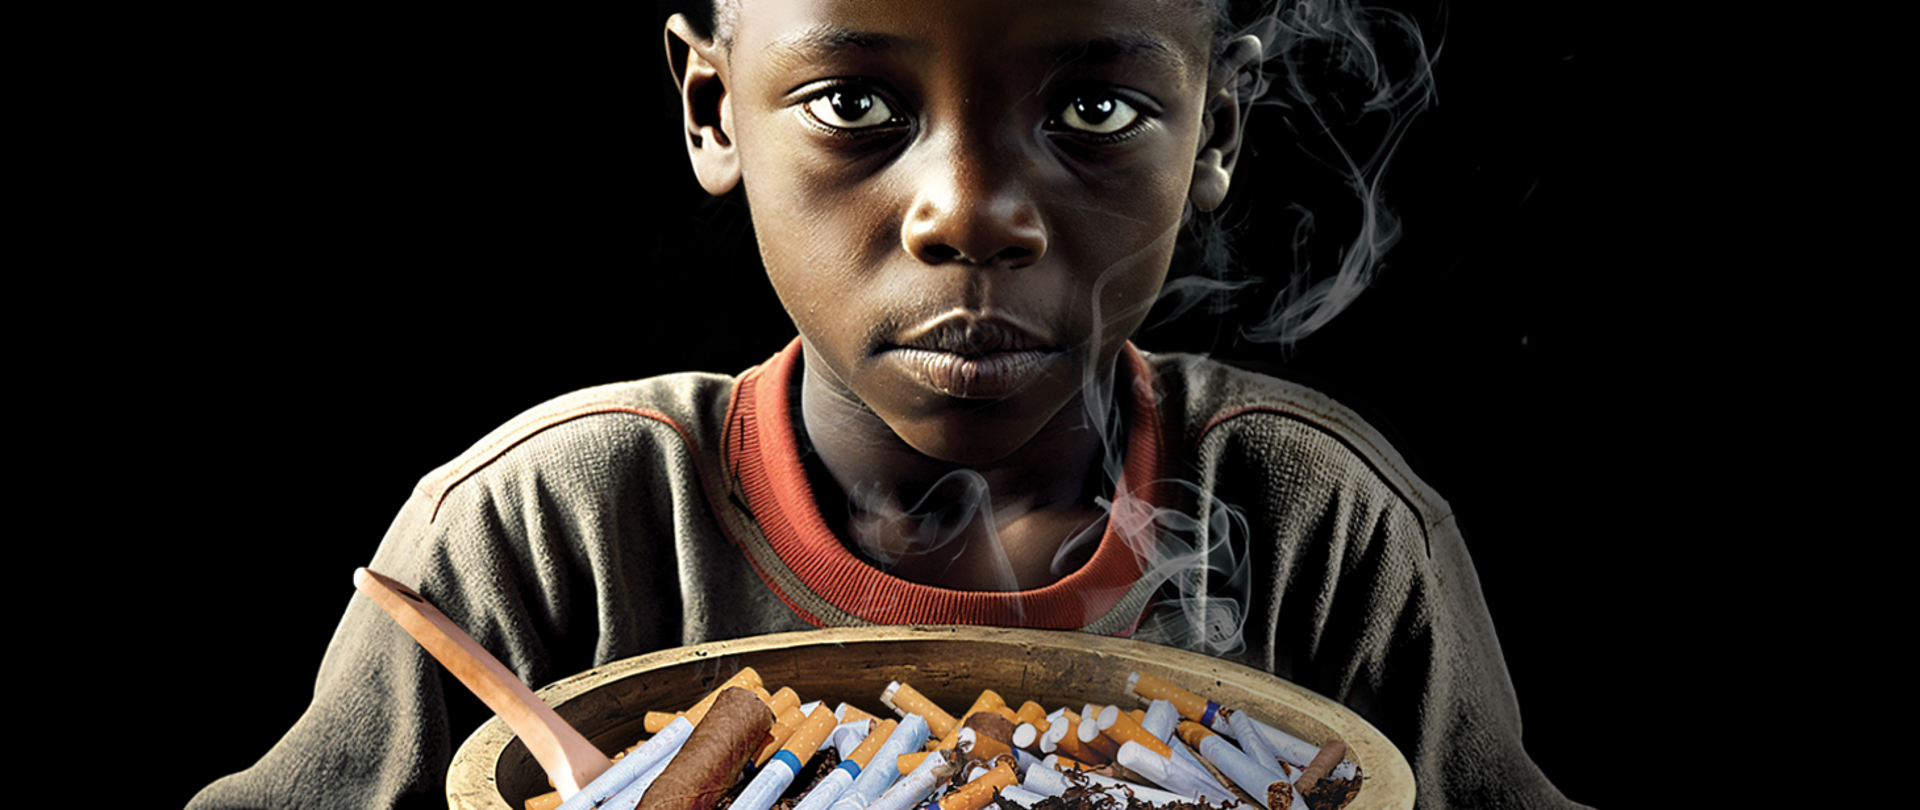 Dziecko z papierosami